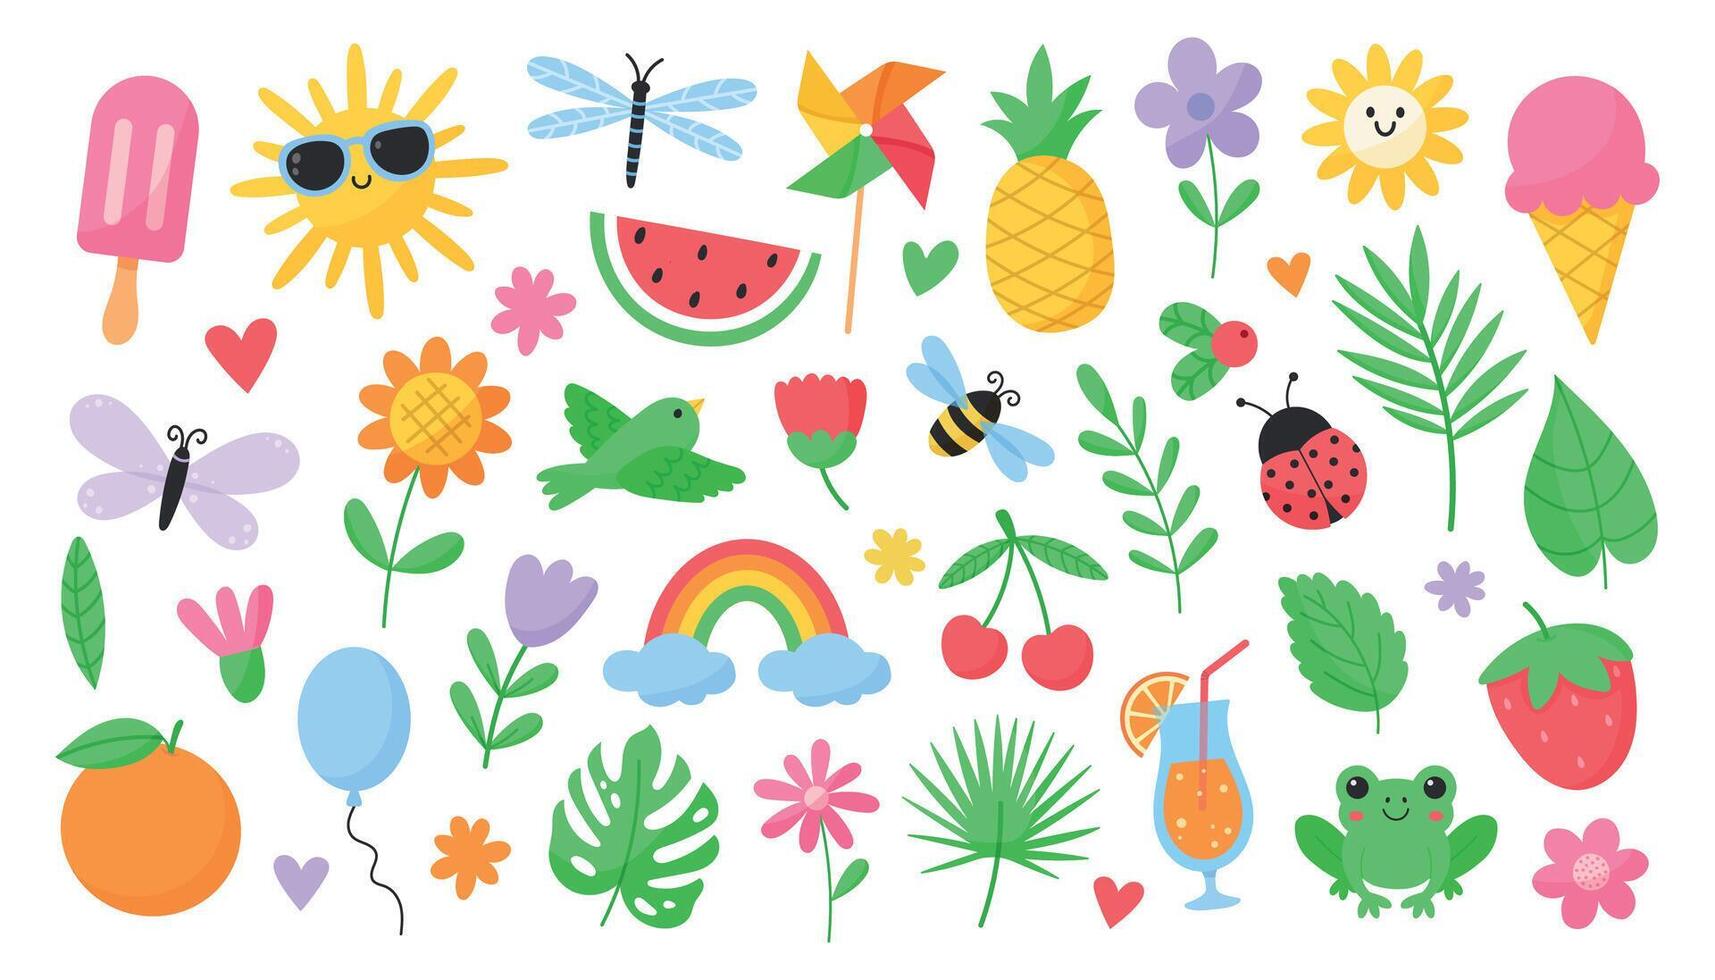 süß Sommer- Satz. Sommer Elemente. Insekten, Blumen, Pflanzen, Früchte, Beeren, Sonne, Regenbogen, Eis Creme, Getränke, Lebensmittel. Hand gezeichnet Illustration vektor